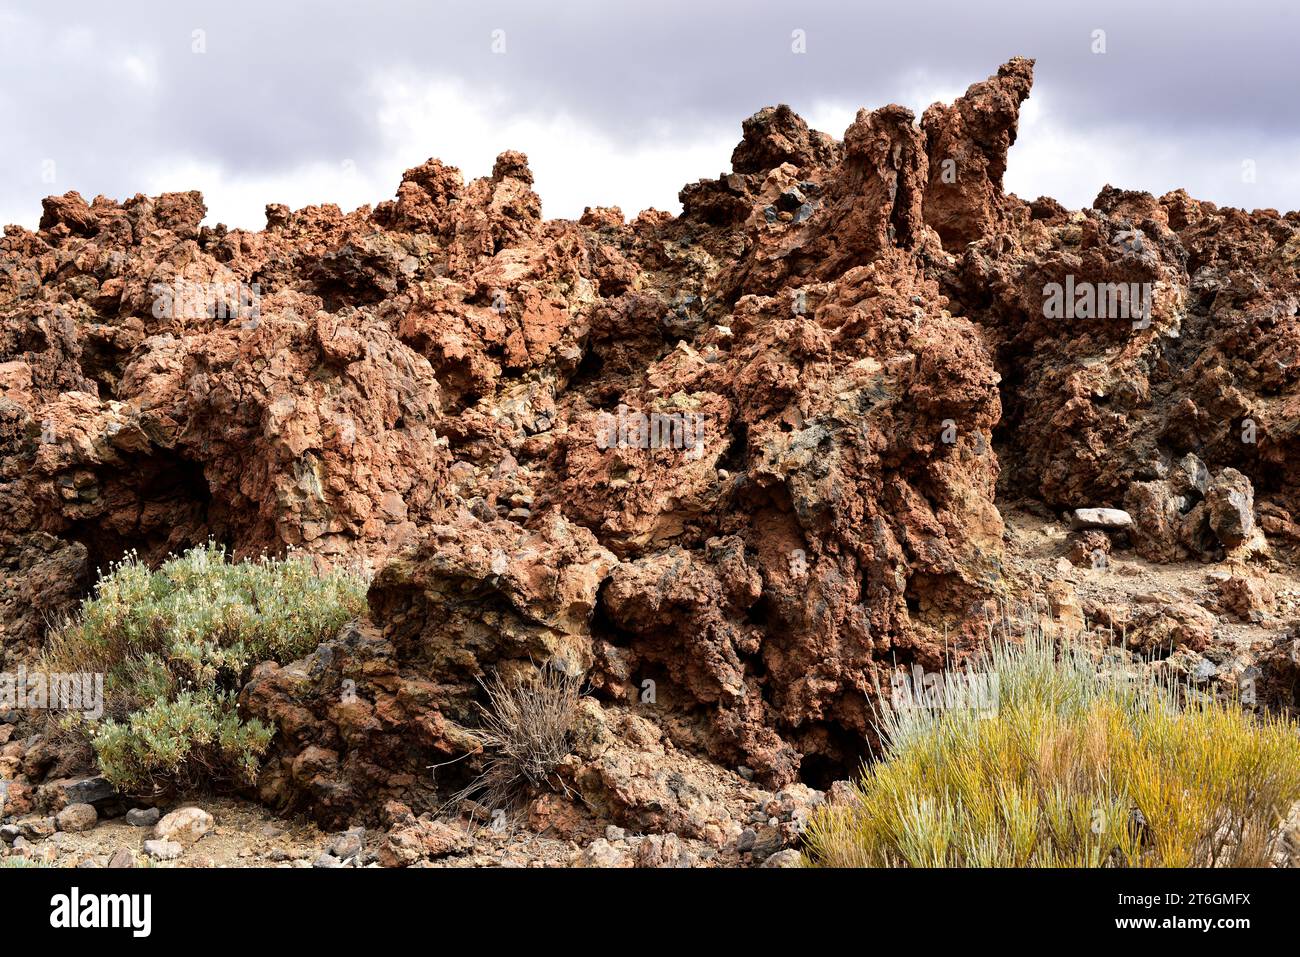 Flusso di lava solidificato tipo aa. Parco nazionale di Cañadas del Teide, Tenerife, Isole Canarie, Spagna. Foto Stock